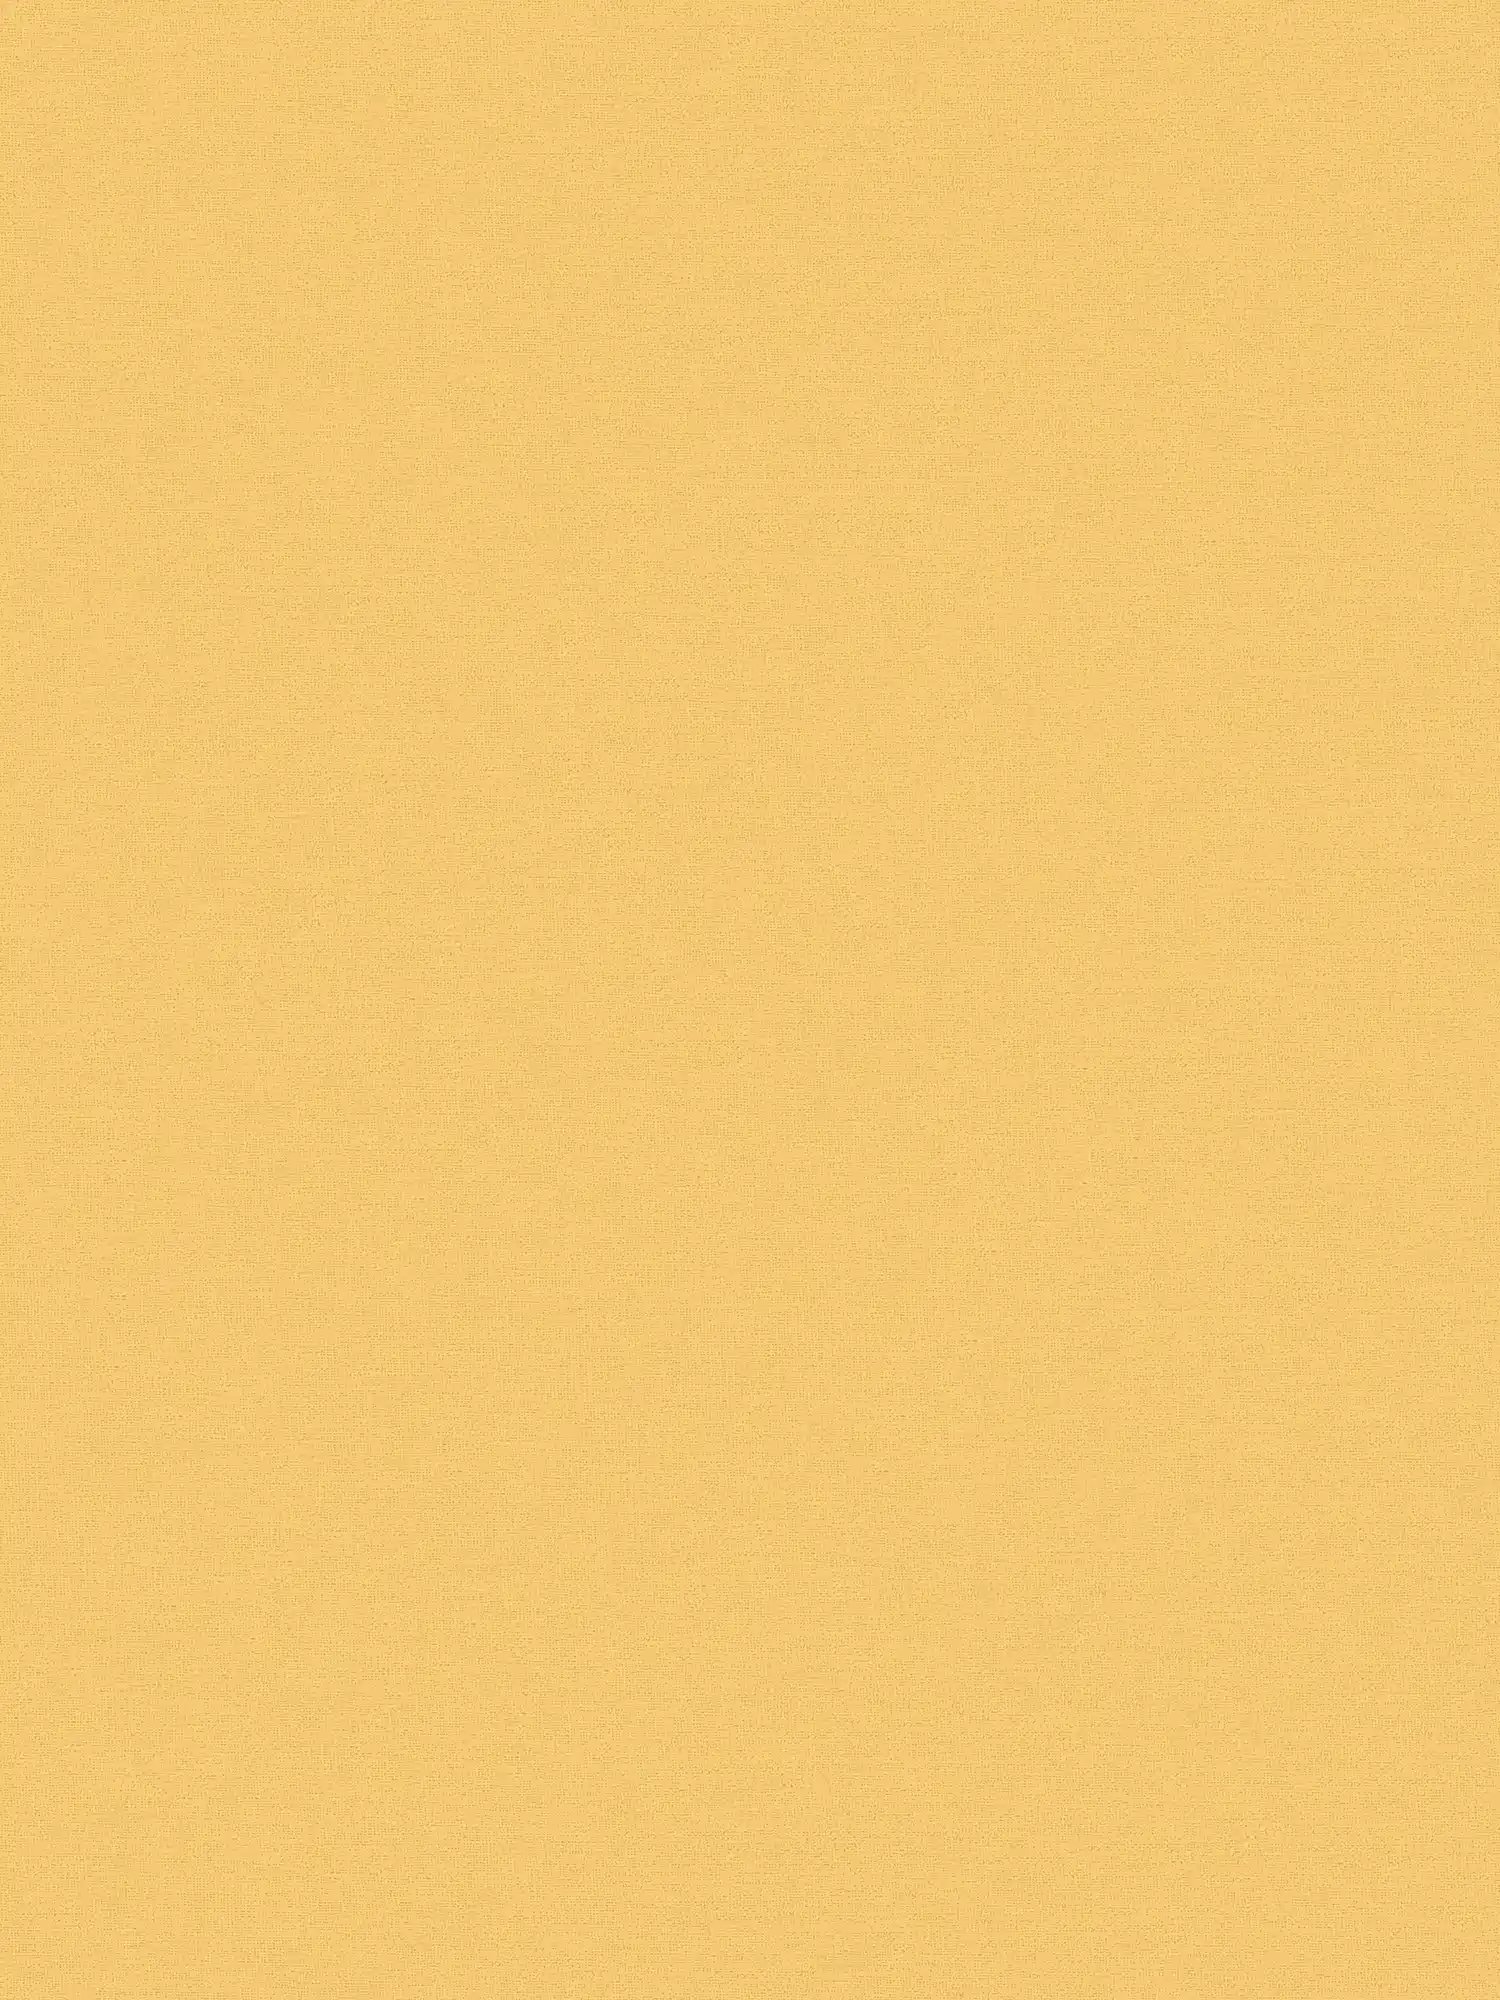 Papel pintado amarillo de MICHALSKY liso y mate
